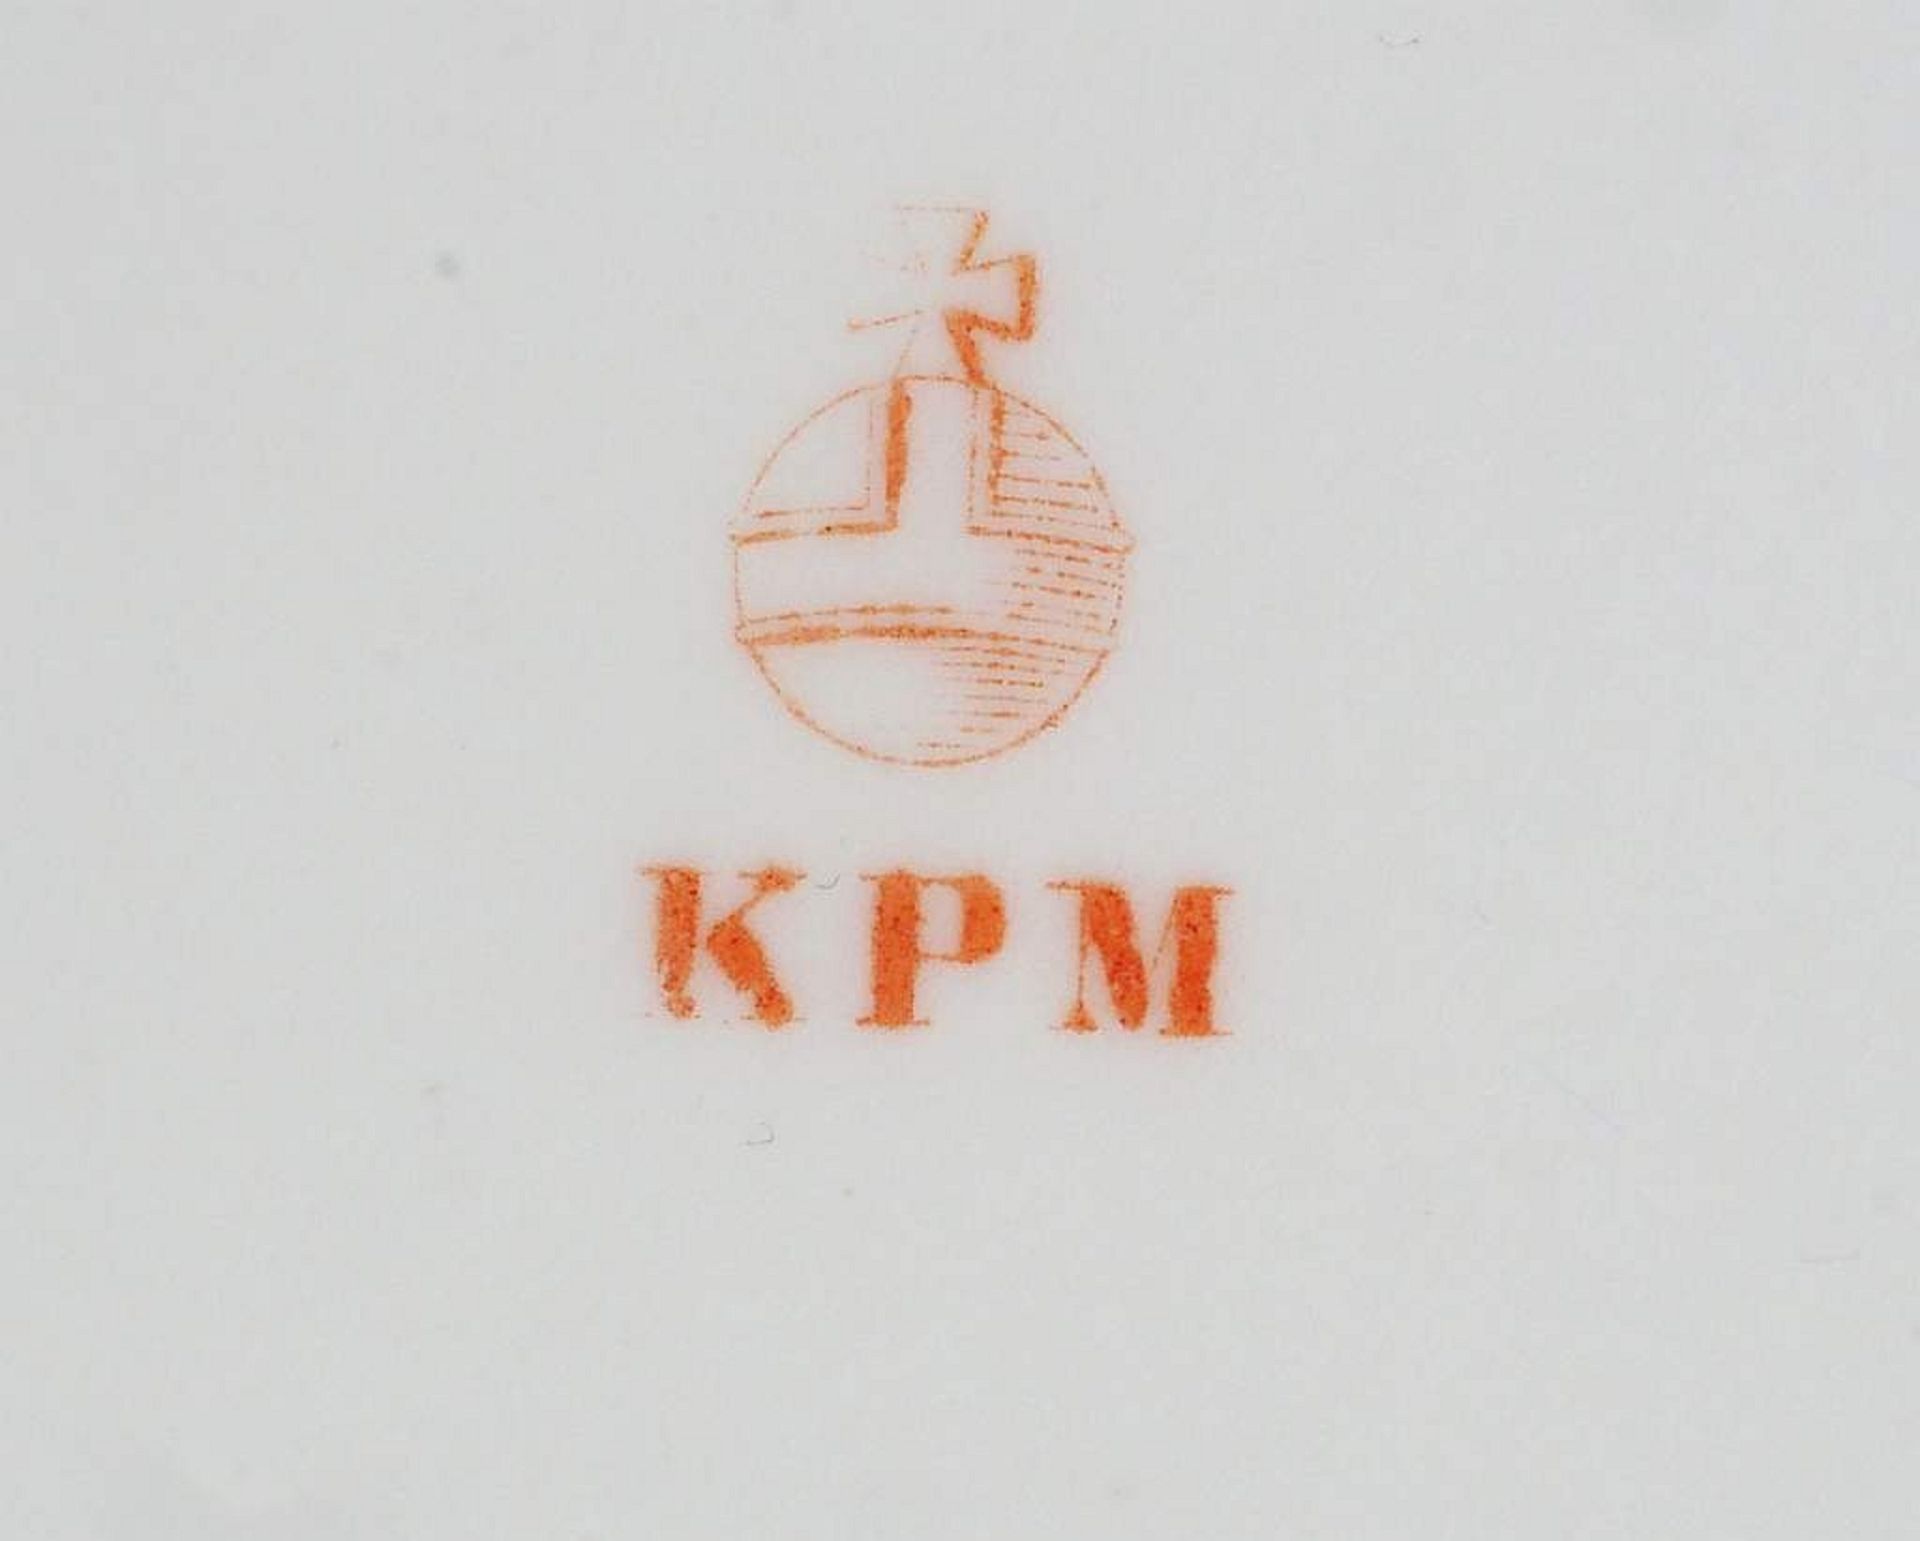 Restservice KPM Berlin, ingesamt 6 Teile. - Image 7 of 8